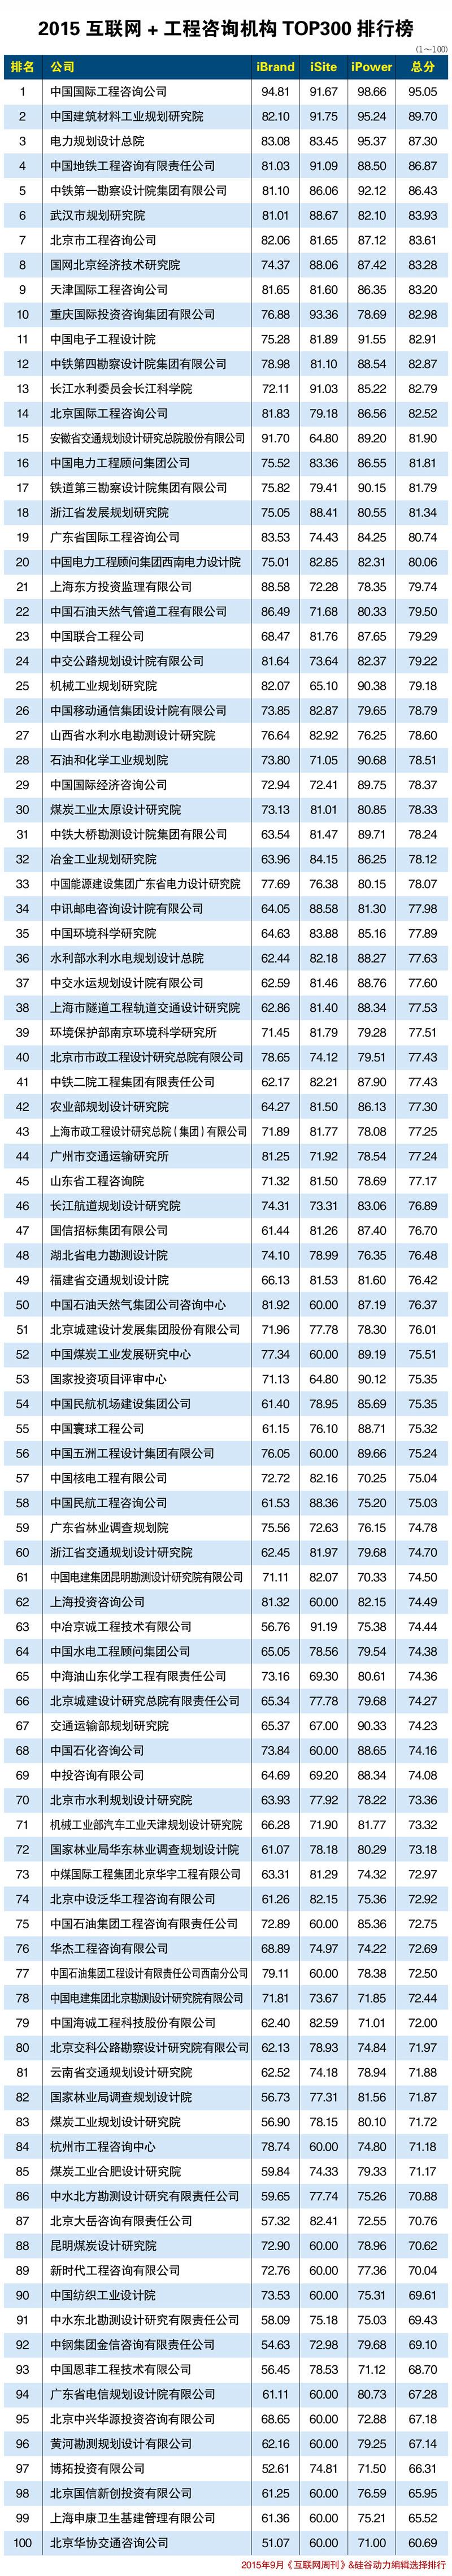 300排行榜_全国TOP300县级市房价排行榜(2)